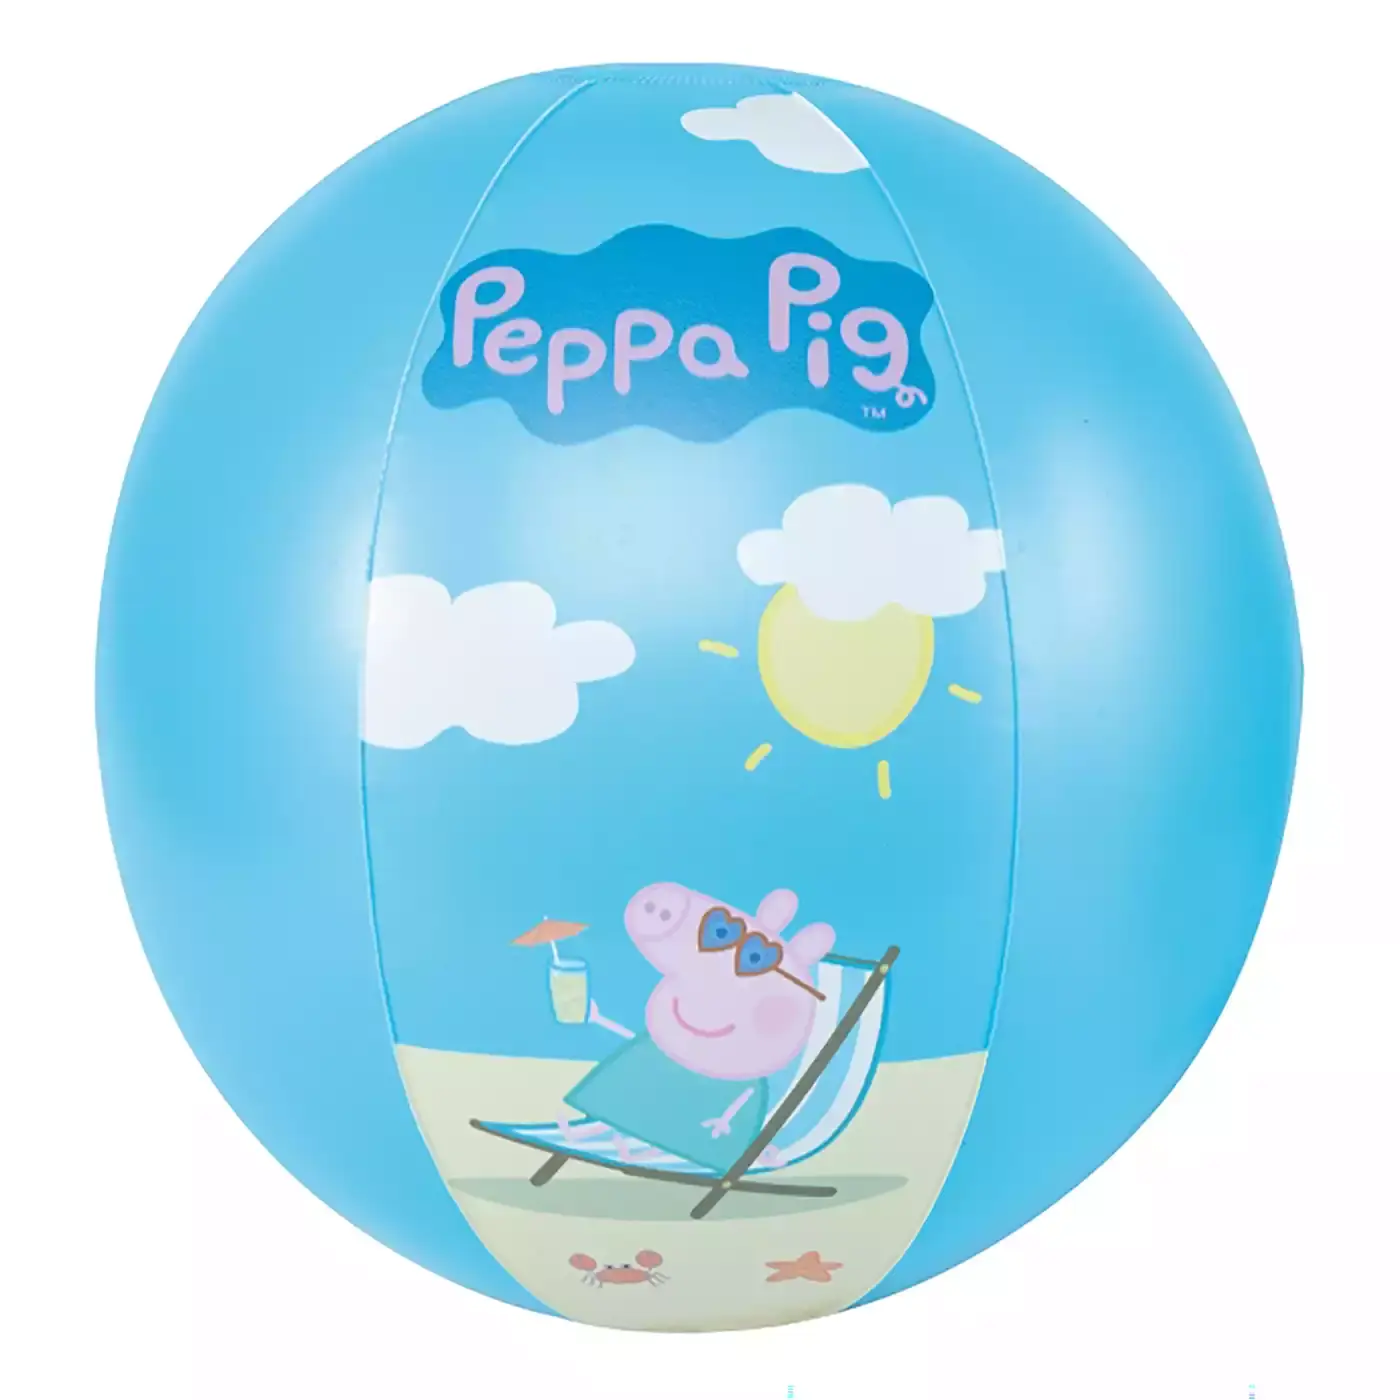 Peppa Pig Wasserball HAPPY PEOPLE Blau 2000578441708 3